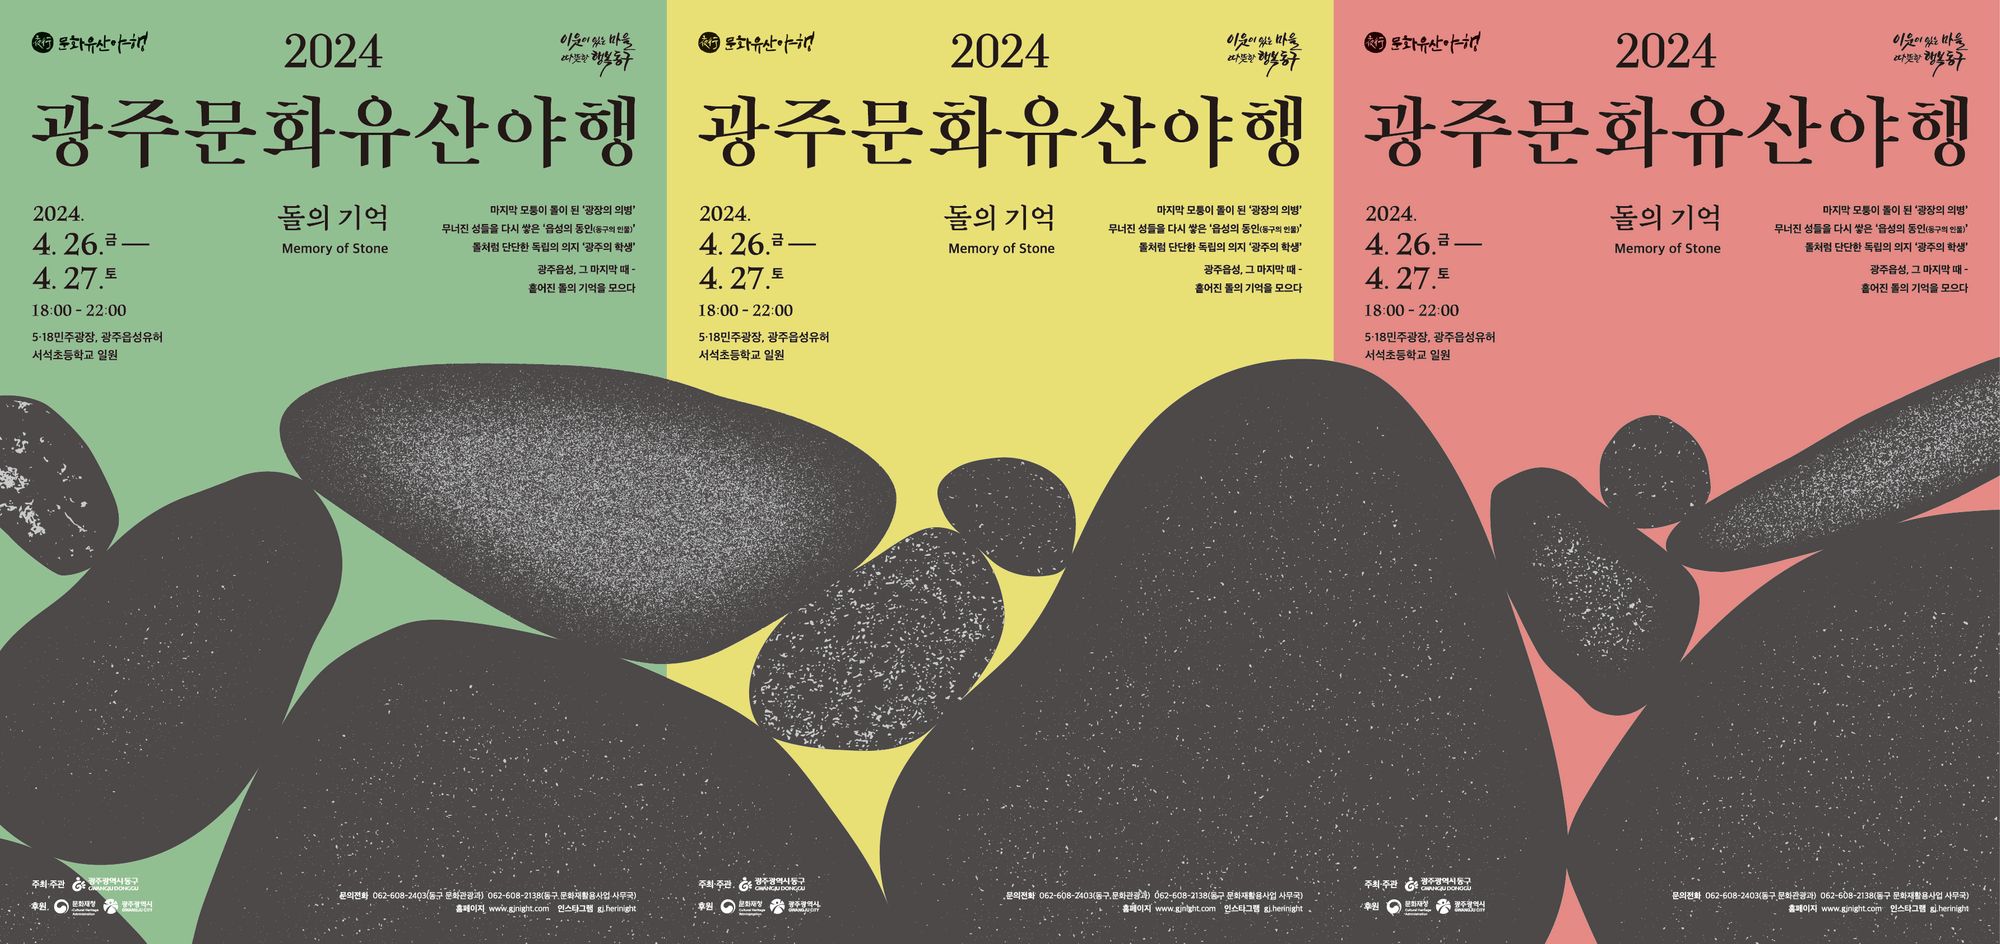 🎊 2024 광주 야행 축제 개최, '돌의기억'으로 역사 속夜를 걷다!